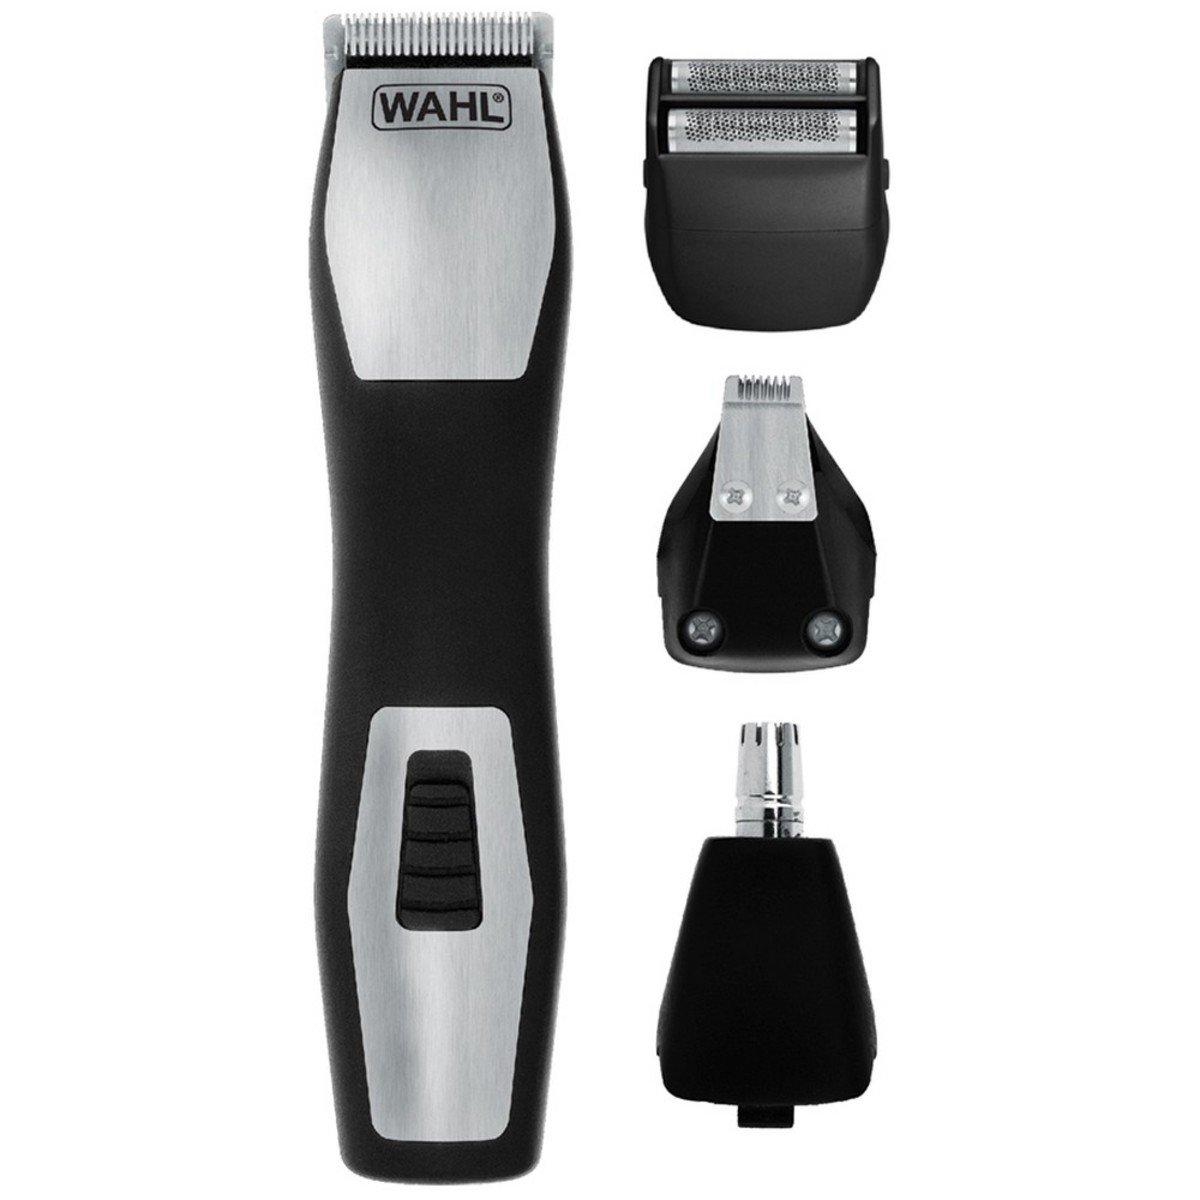 wahl trimmer model 9855